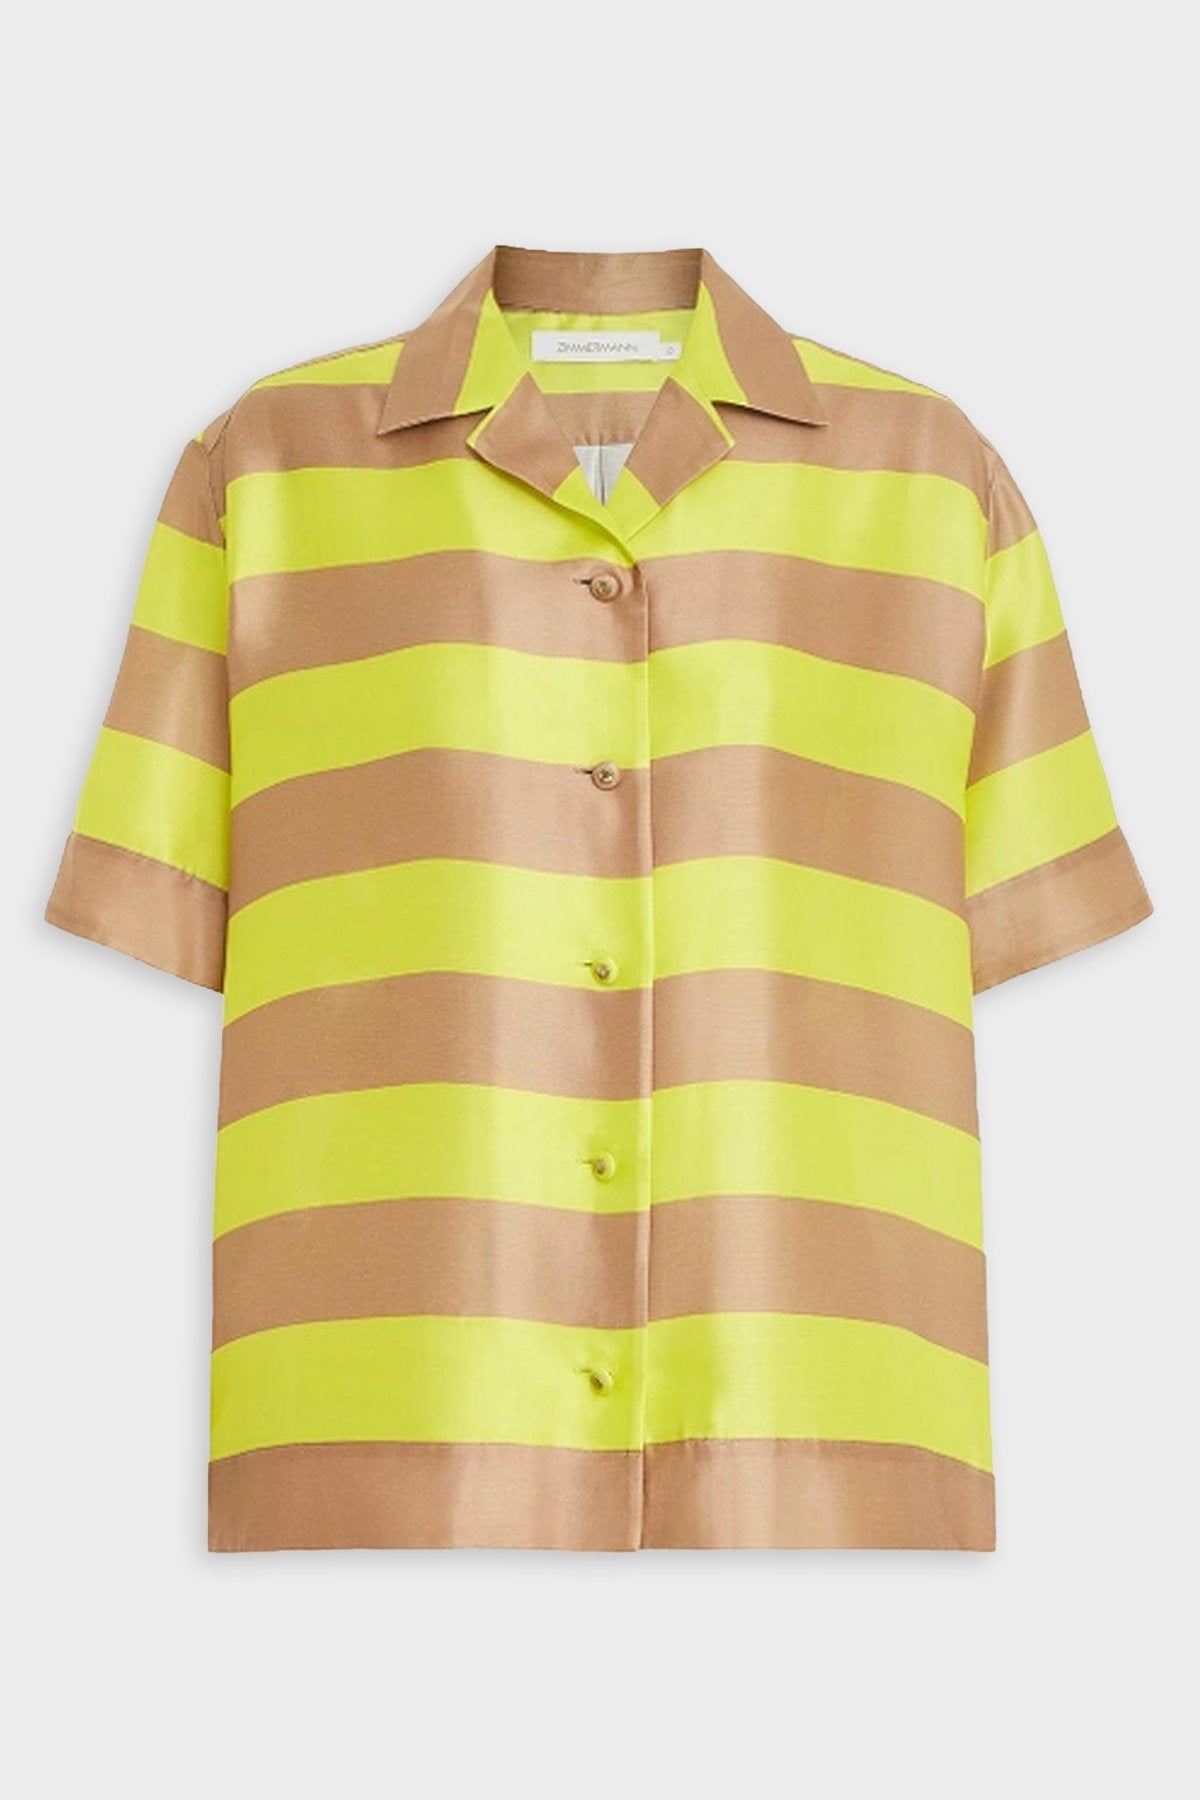 Wonderland Short Sleeve Shirt in Lime Stripe - shop-olivia.com